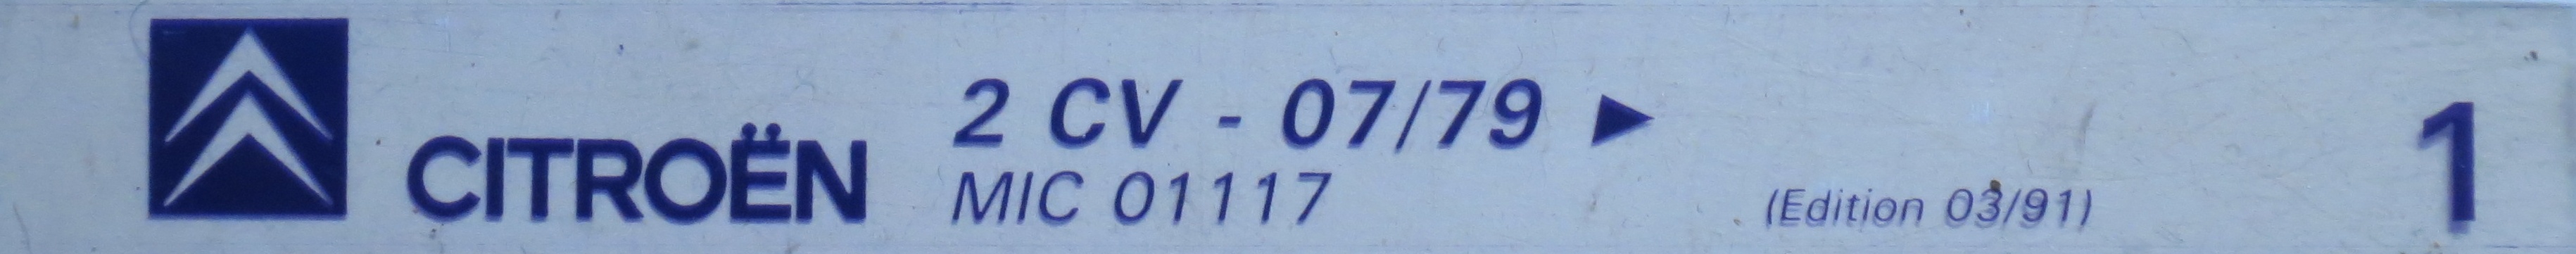 MIC001117 Catalogue pièces rechange Citroën 2CV 07/79► 03/91